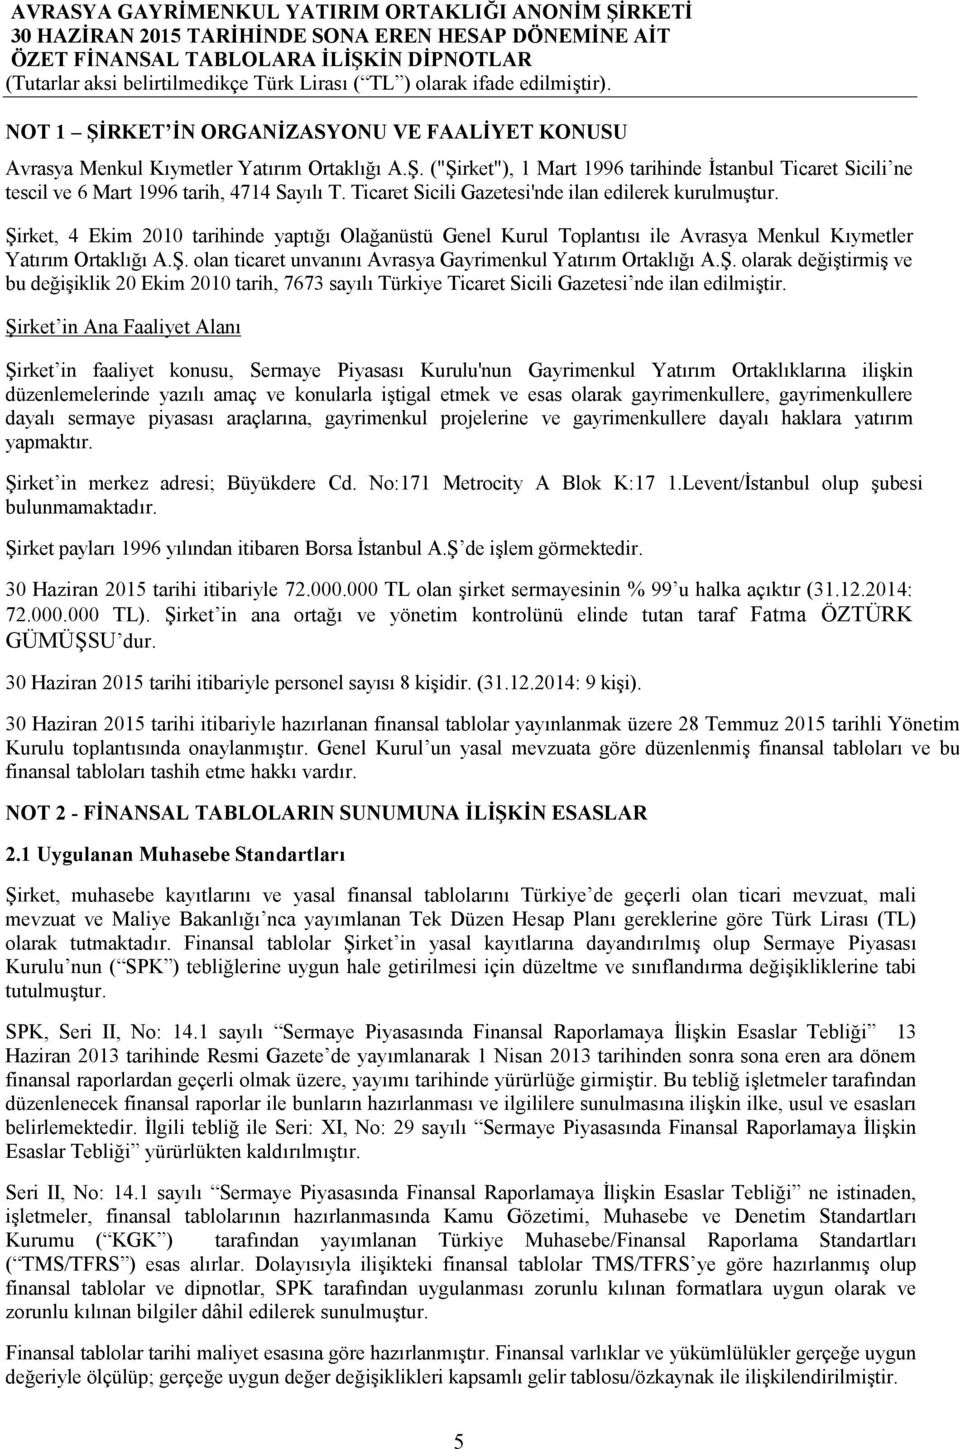 Ş. olarak değiştirmiş ve bu değişiklik 20 Ekim 2010 tarih, 7673 sayılı Türkiye Ticaret Sicili Gazetesi nde ilan edilmiştir.